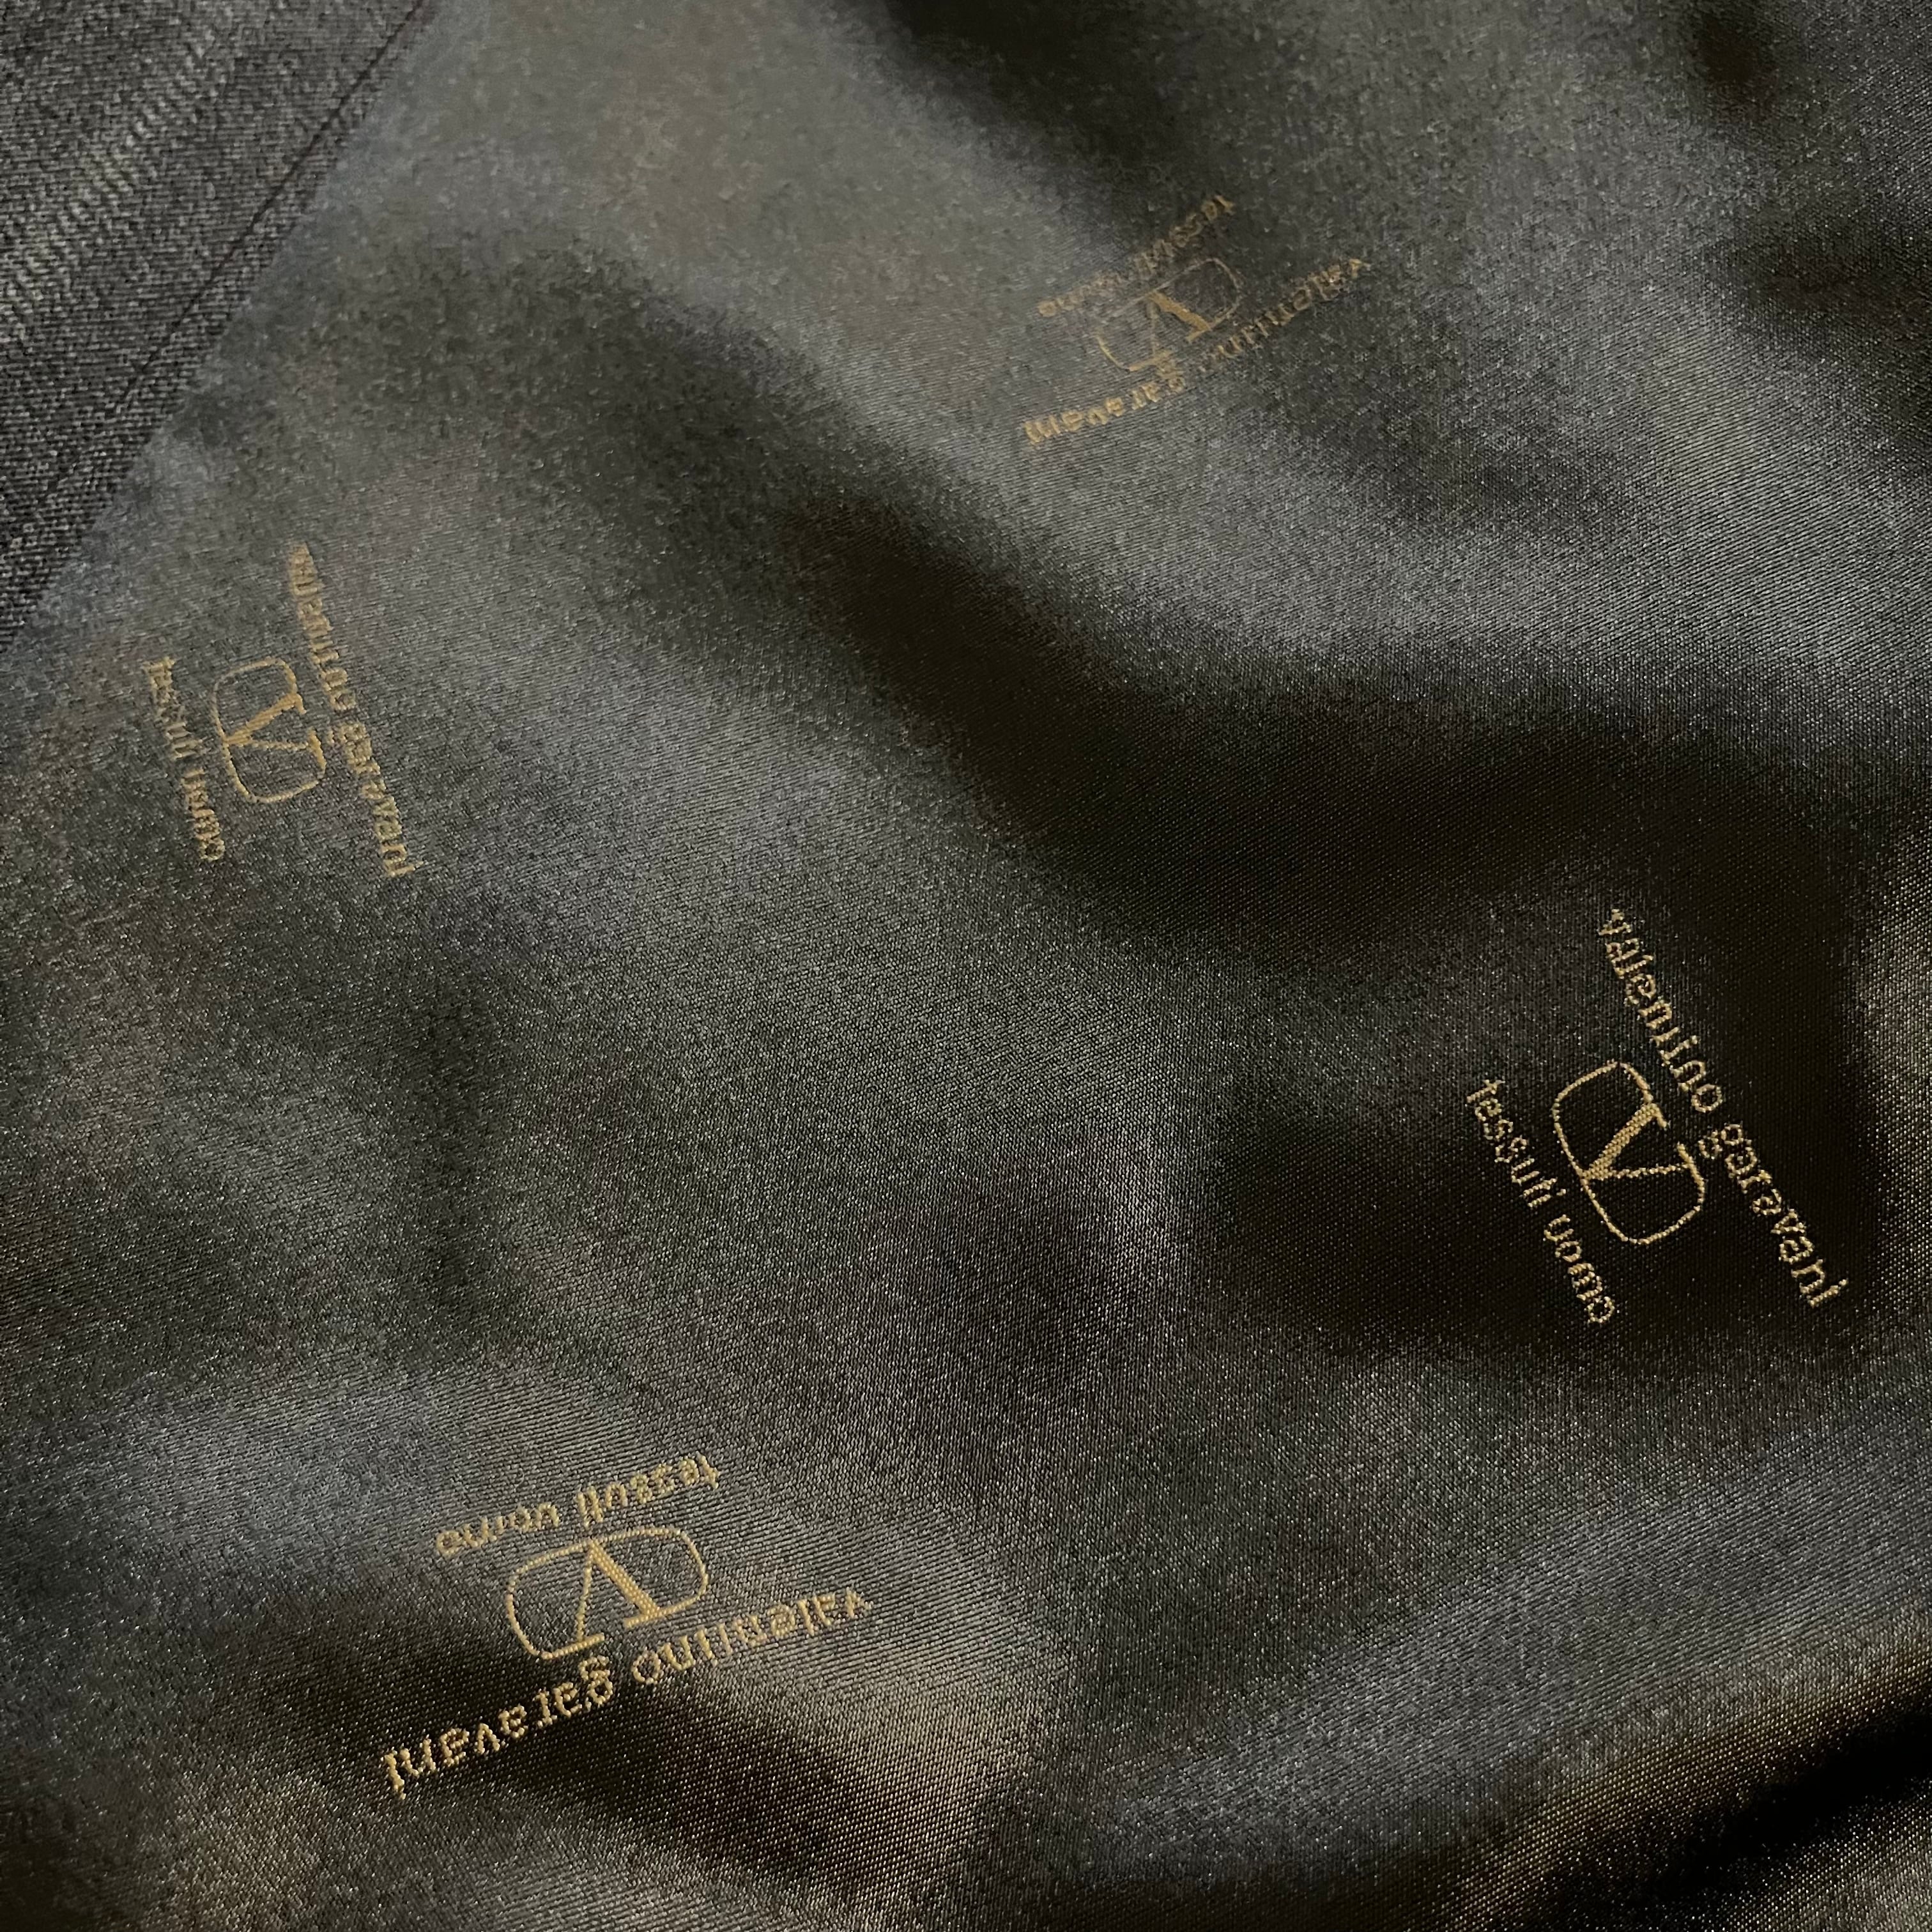 VALENTINO〗double wool setup suit/ヴァレンティノ ダブル ウール